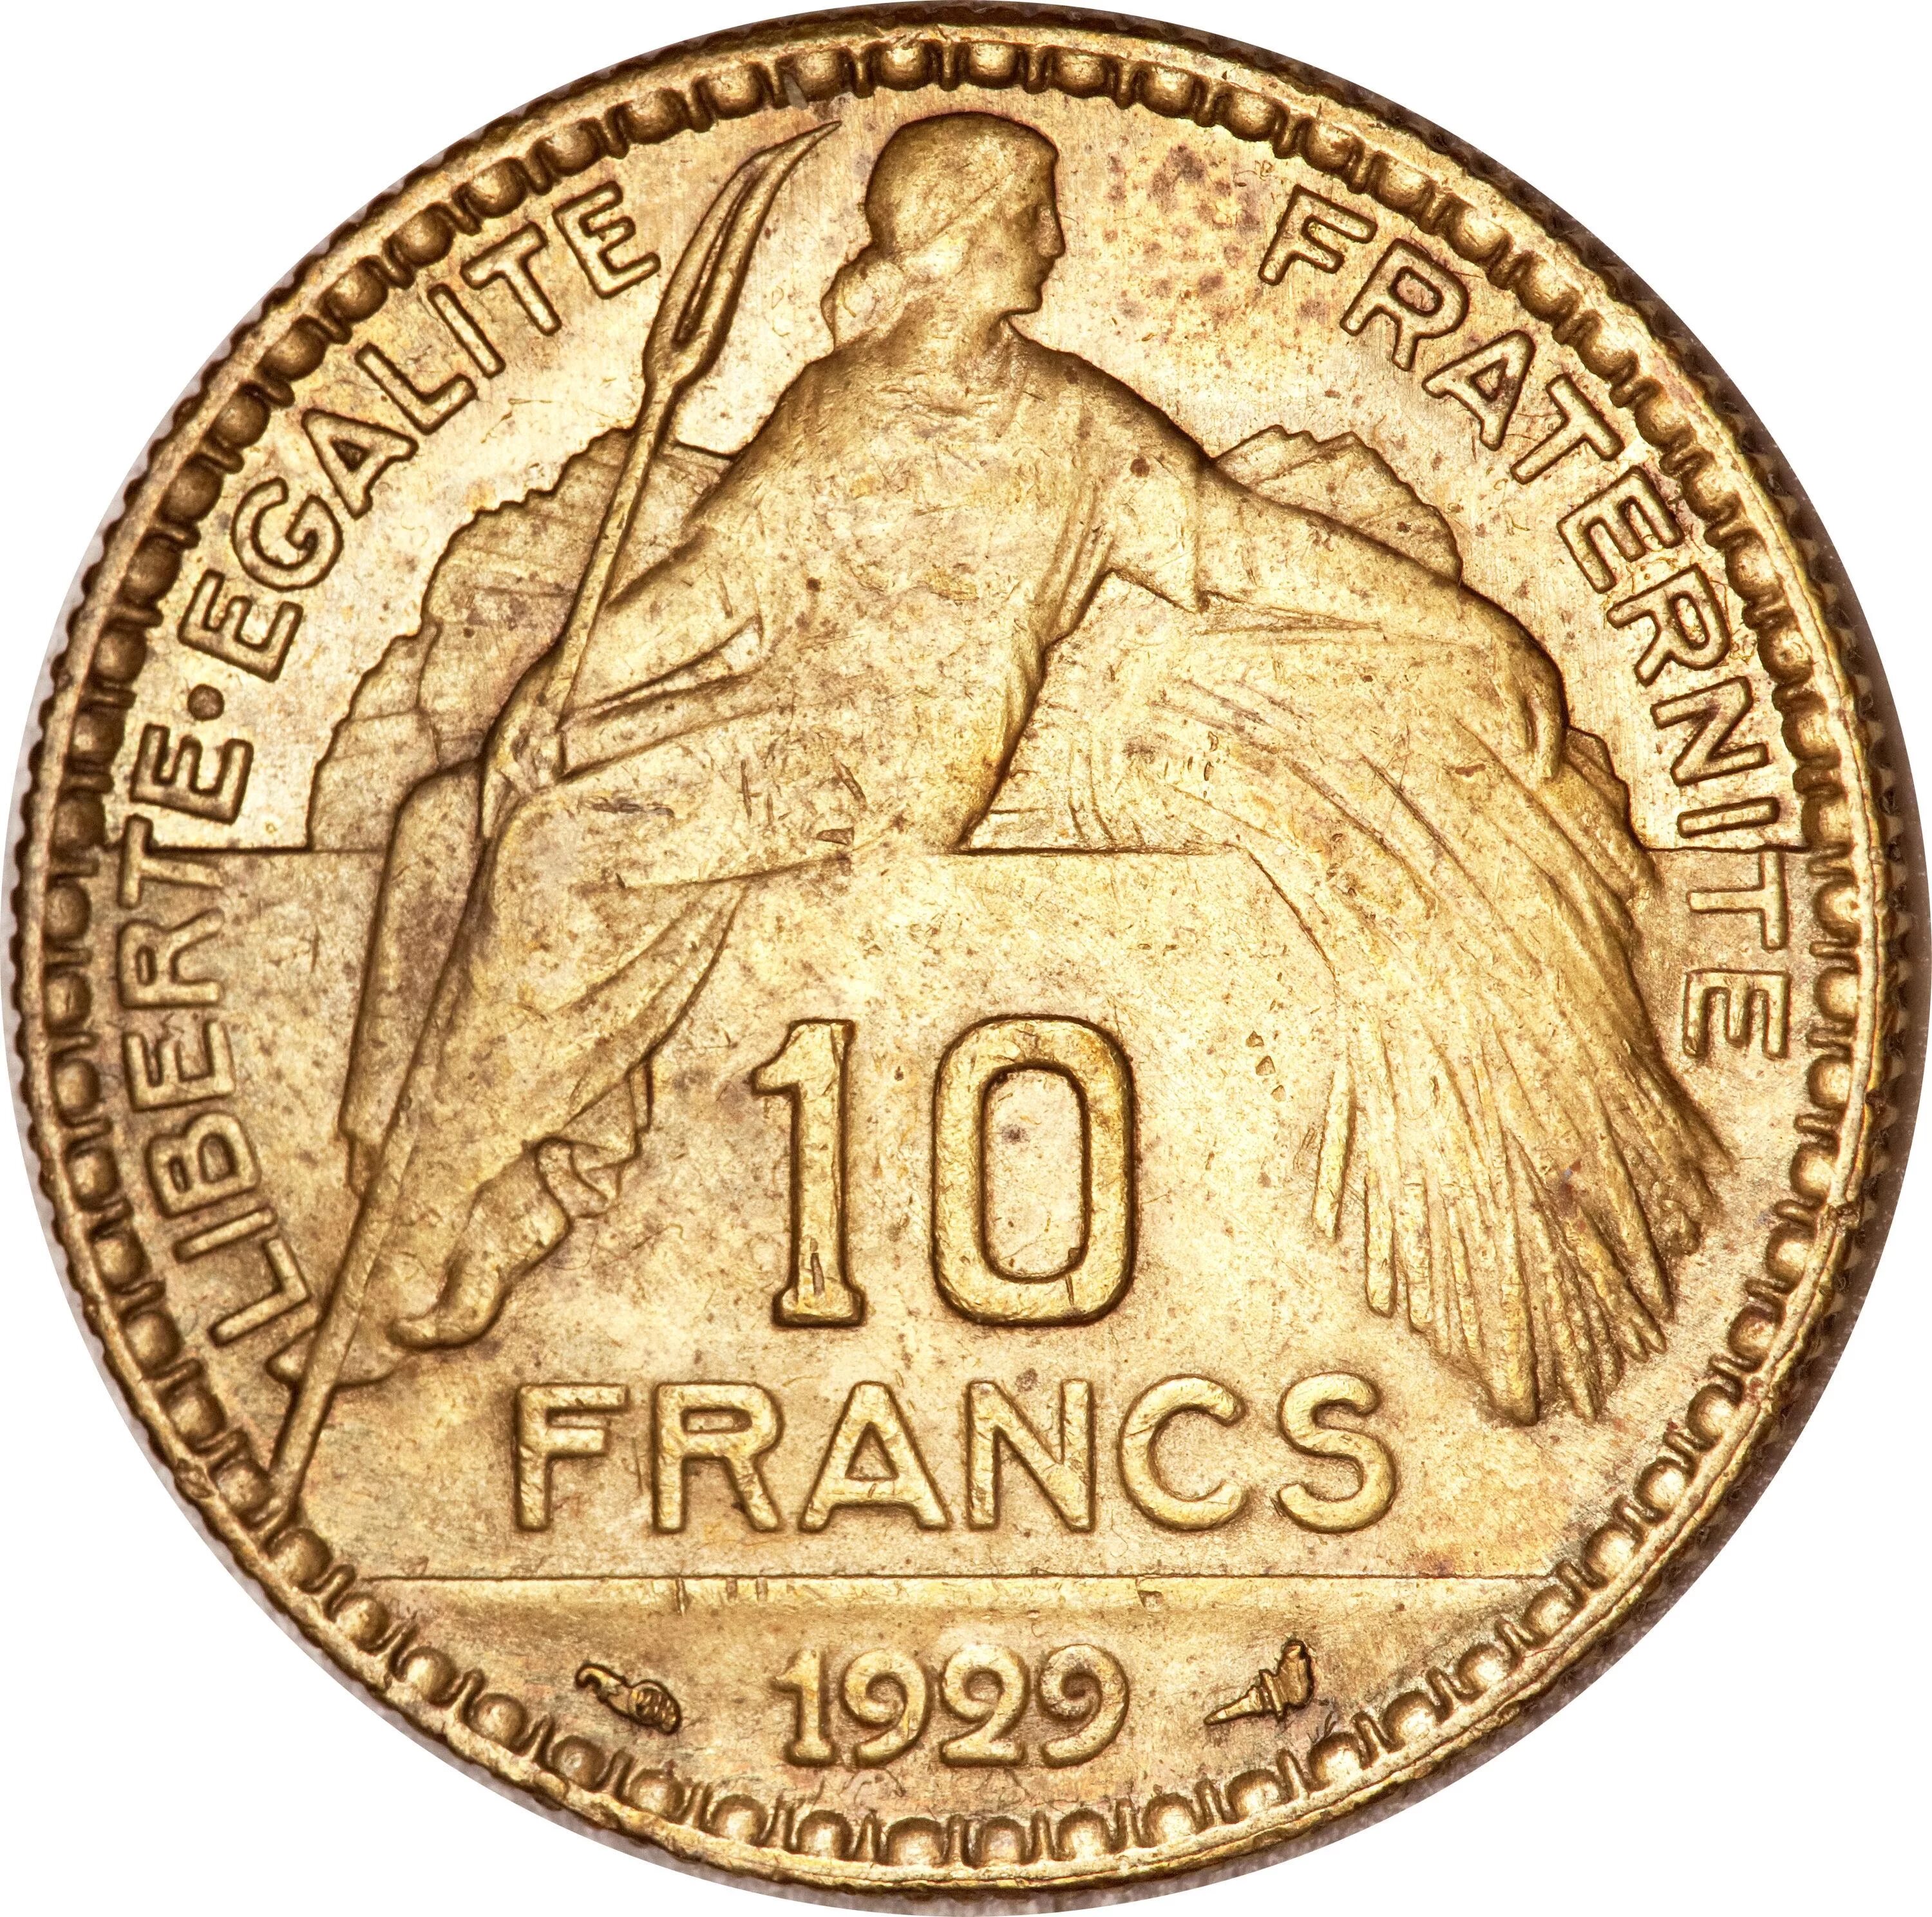 Republique монета. Francaise монета. Fraternite монета 10. Liberté égalité Fraternité монета. French x